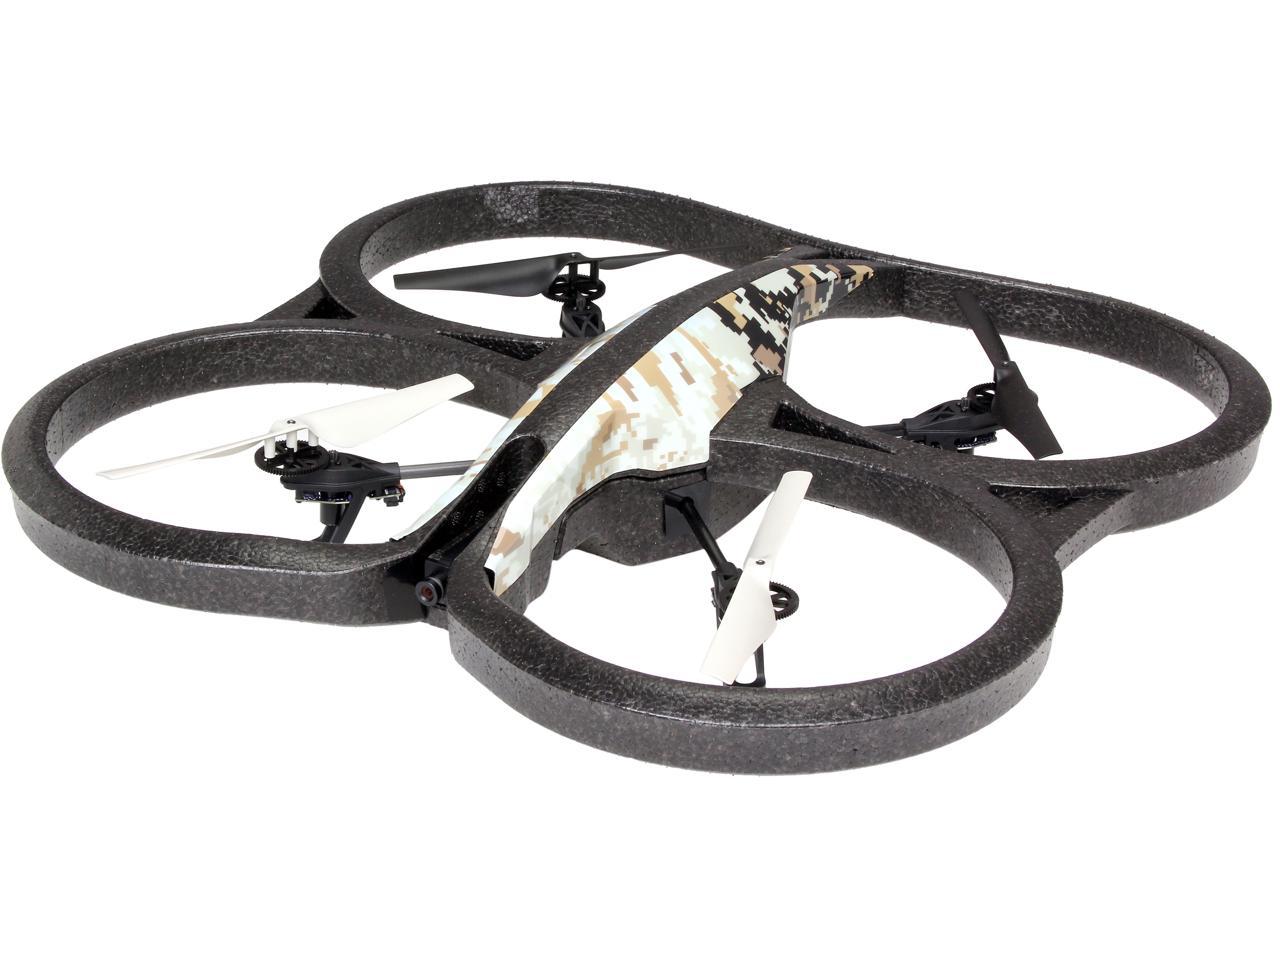 Parrot AR.Drone 2.0 Elite Edition Quadricopter, 720p HD Camera, Smartphone Control, Sand Version Newegg.com